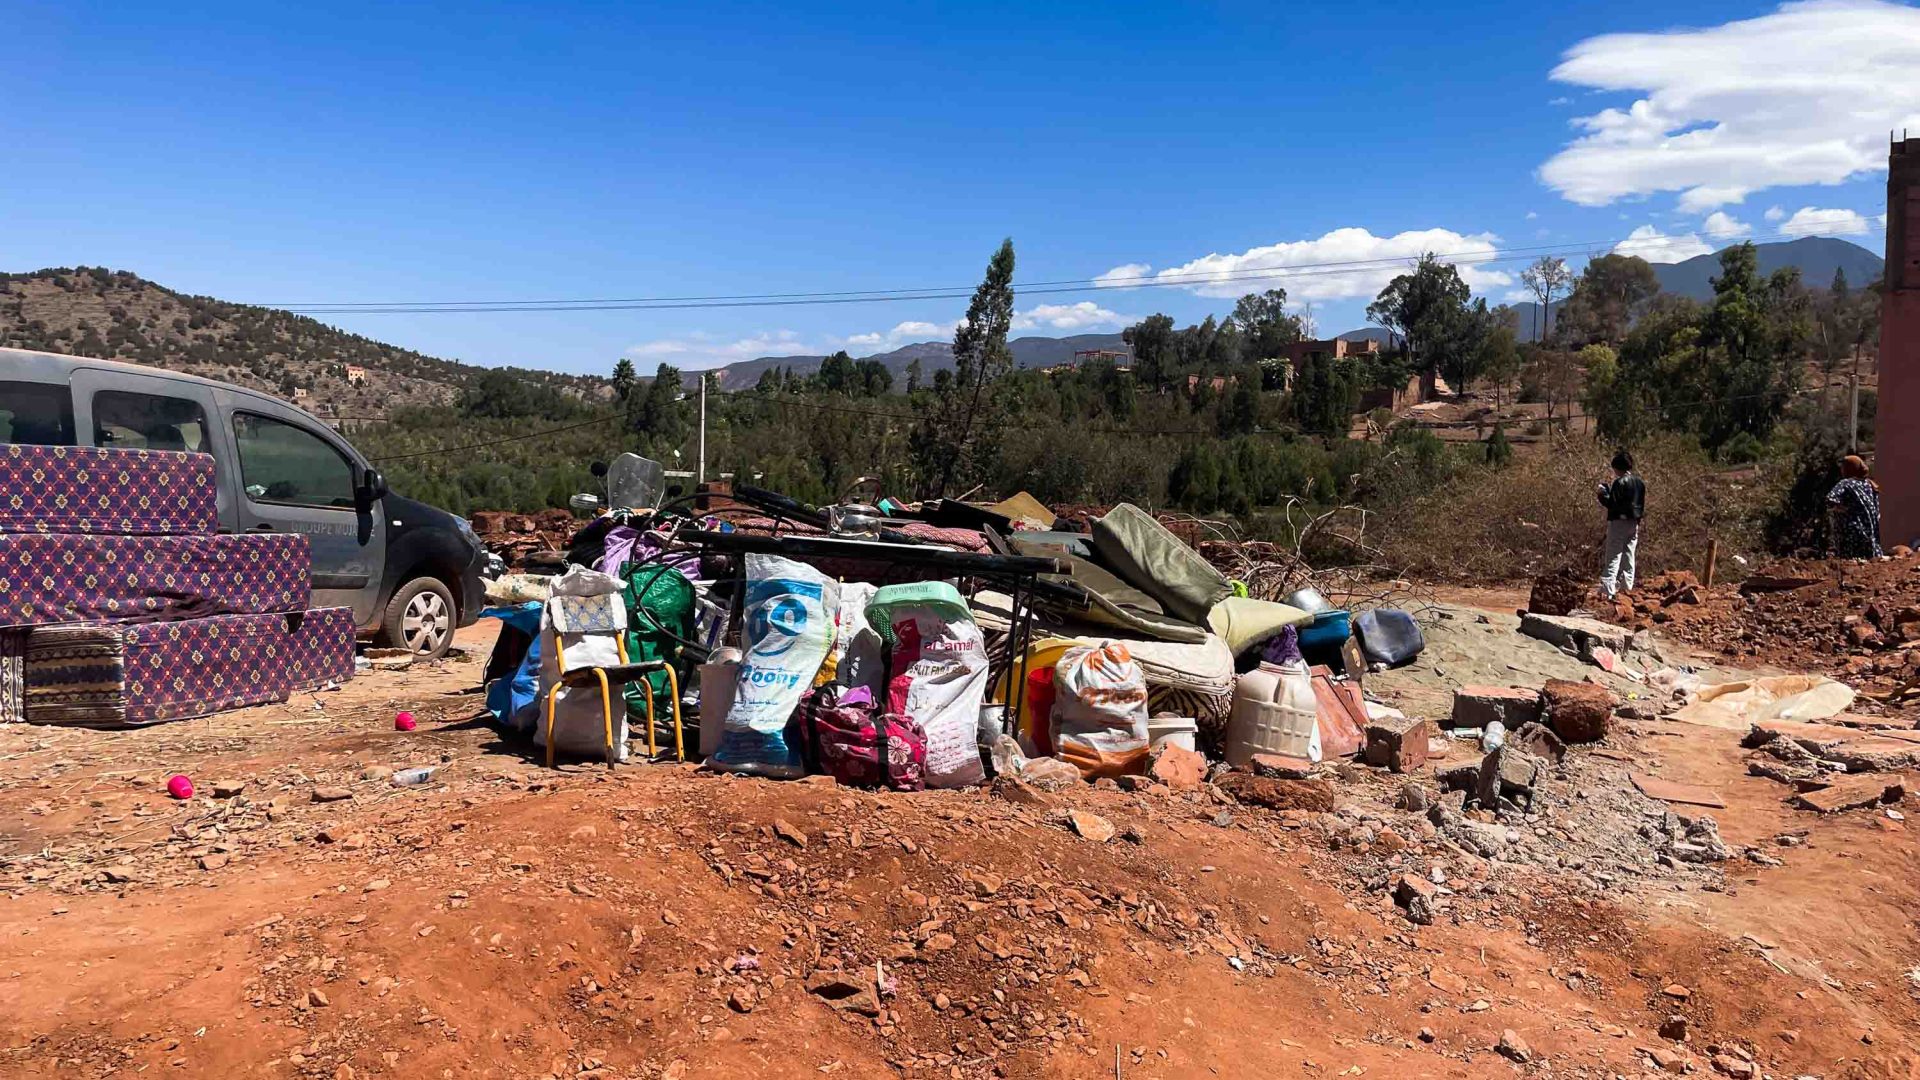 Peoples belongings in a pile outside in Ouirgane.